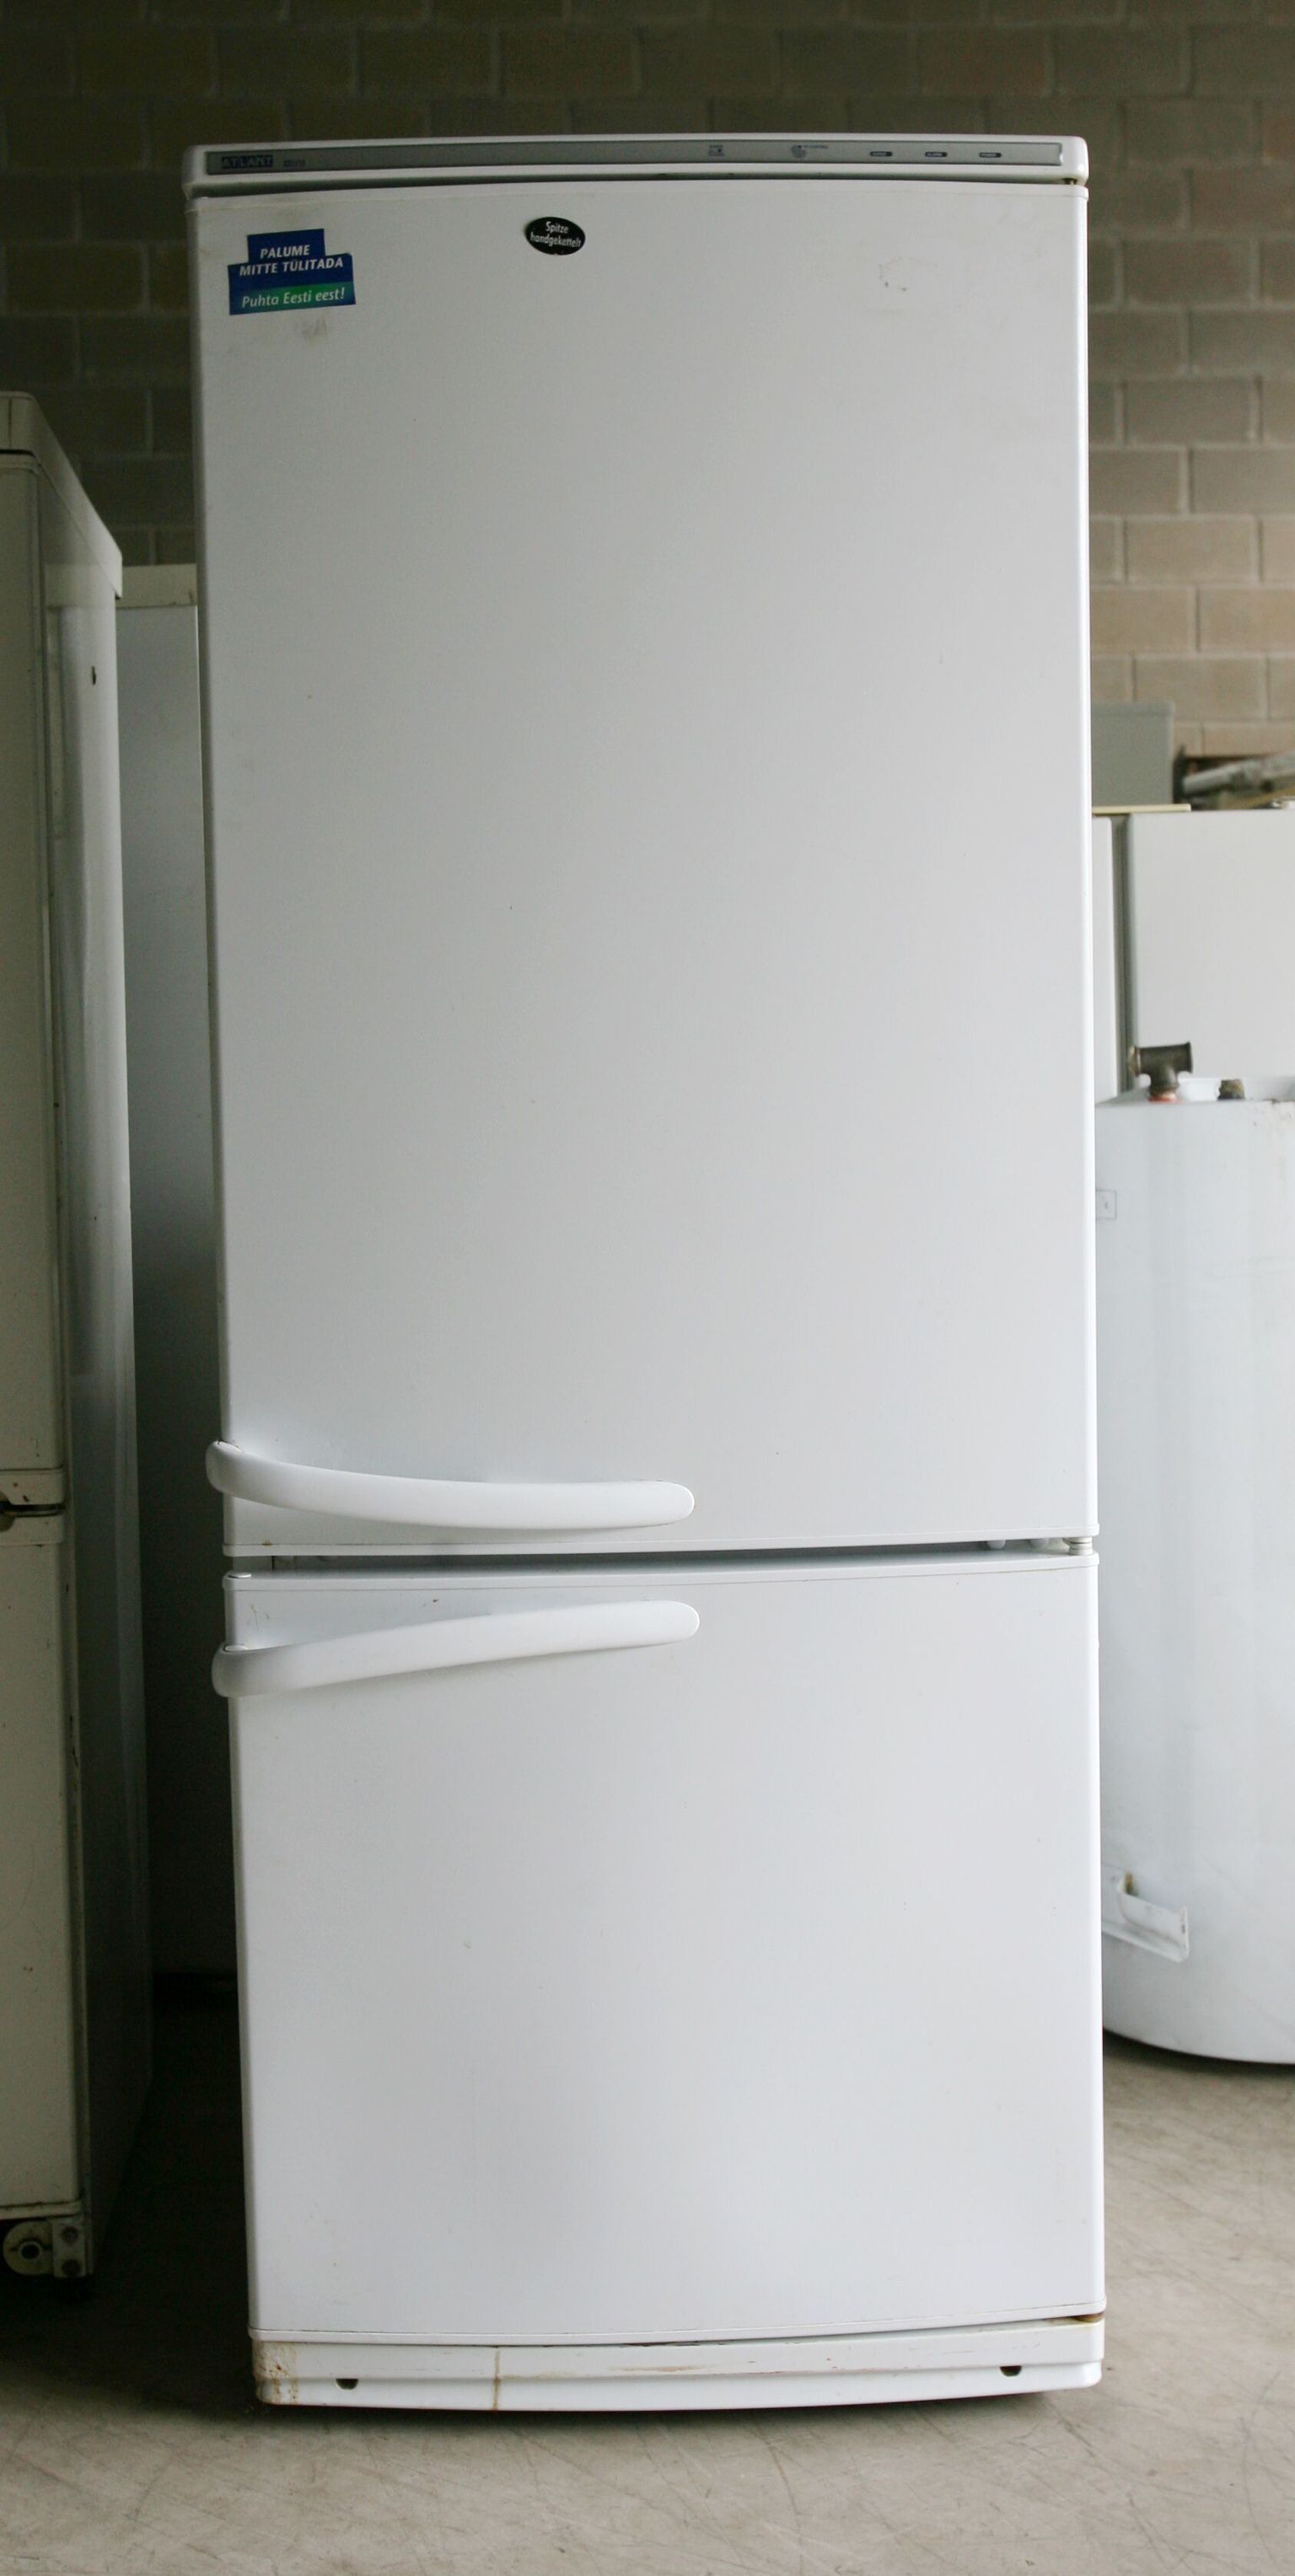 Холодильник. Иллюстративное фото.